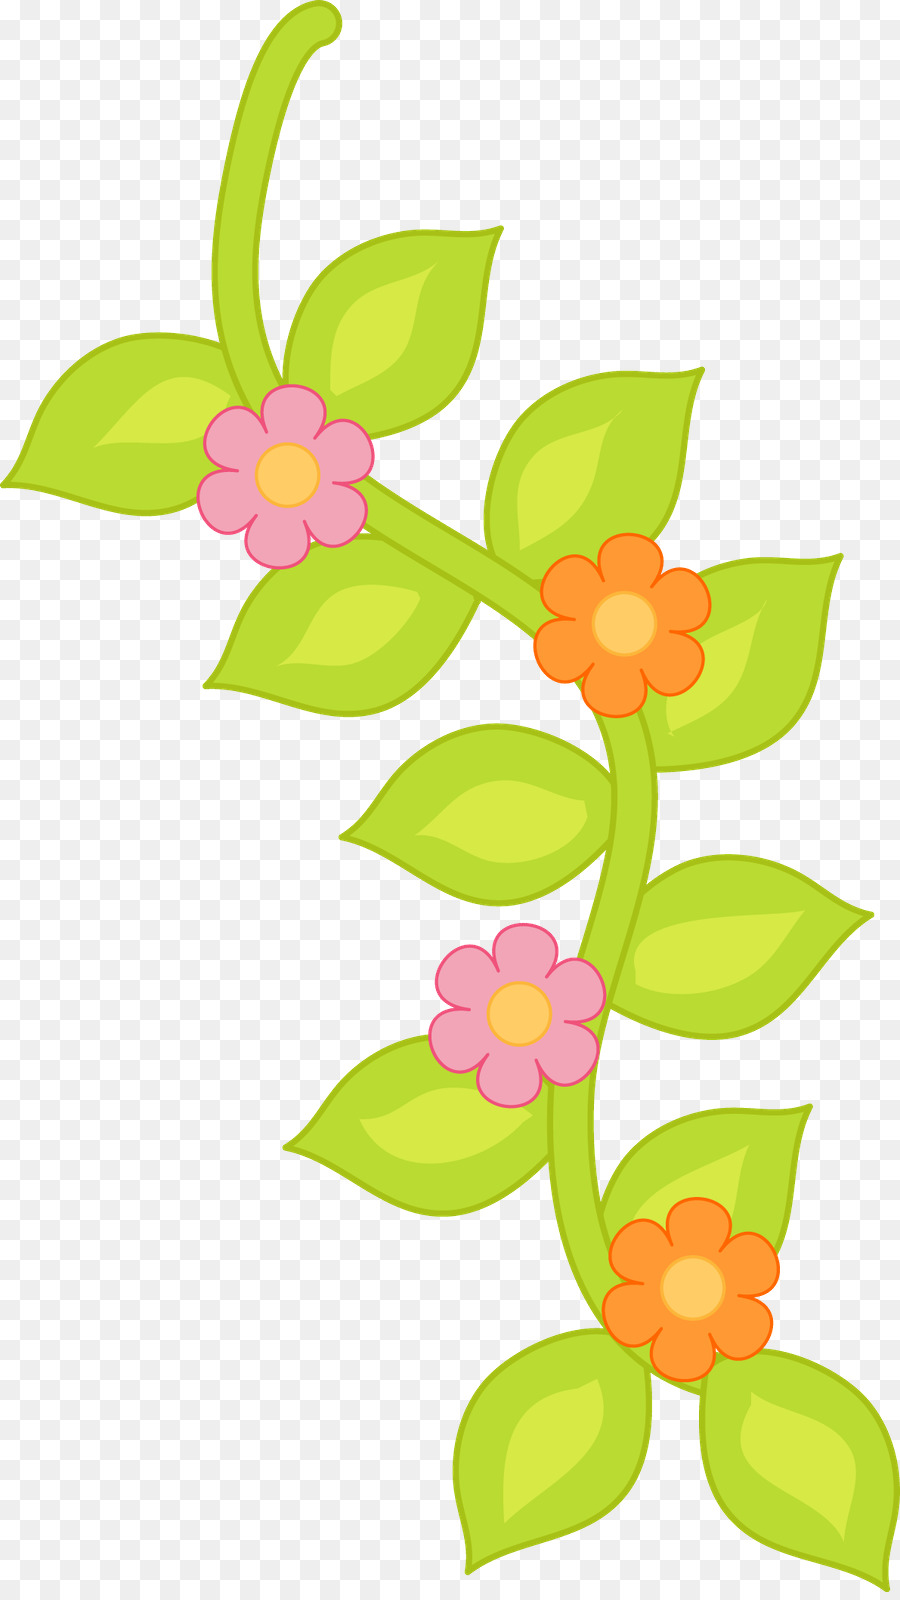 Prestato - Illustrazione di immagine di grafica di rete portatile ClipArt Pasqua - fiore